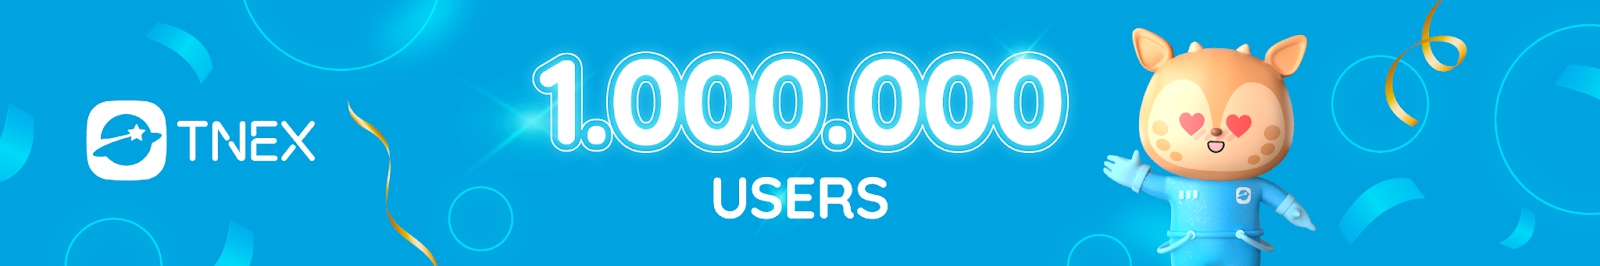 Ngân hàng thuần số Tnex đạt một triệu người dùng chỉ sau 1 năm ra mắt - ảnh 1